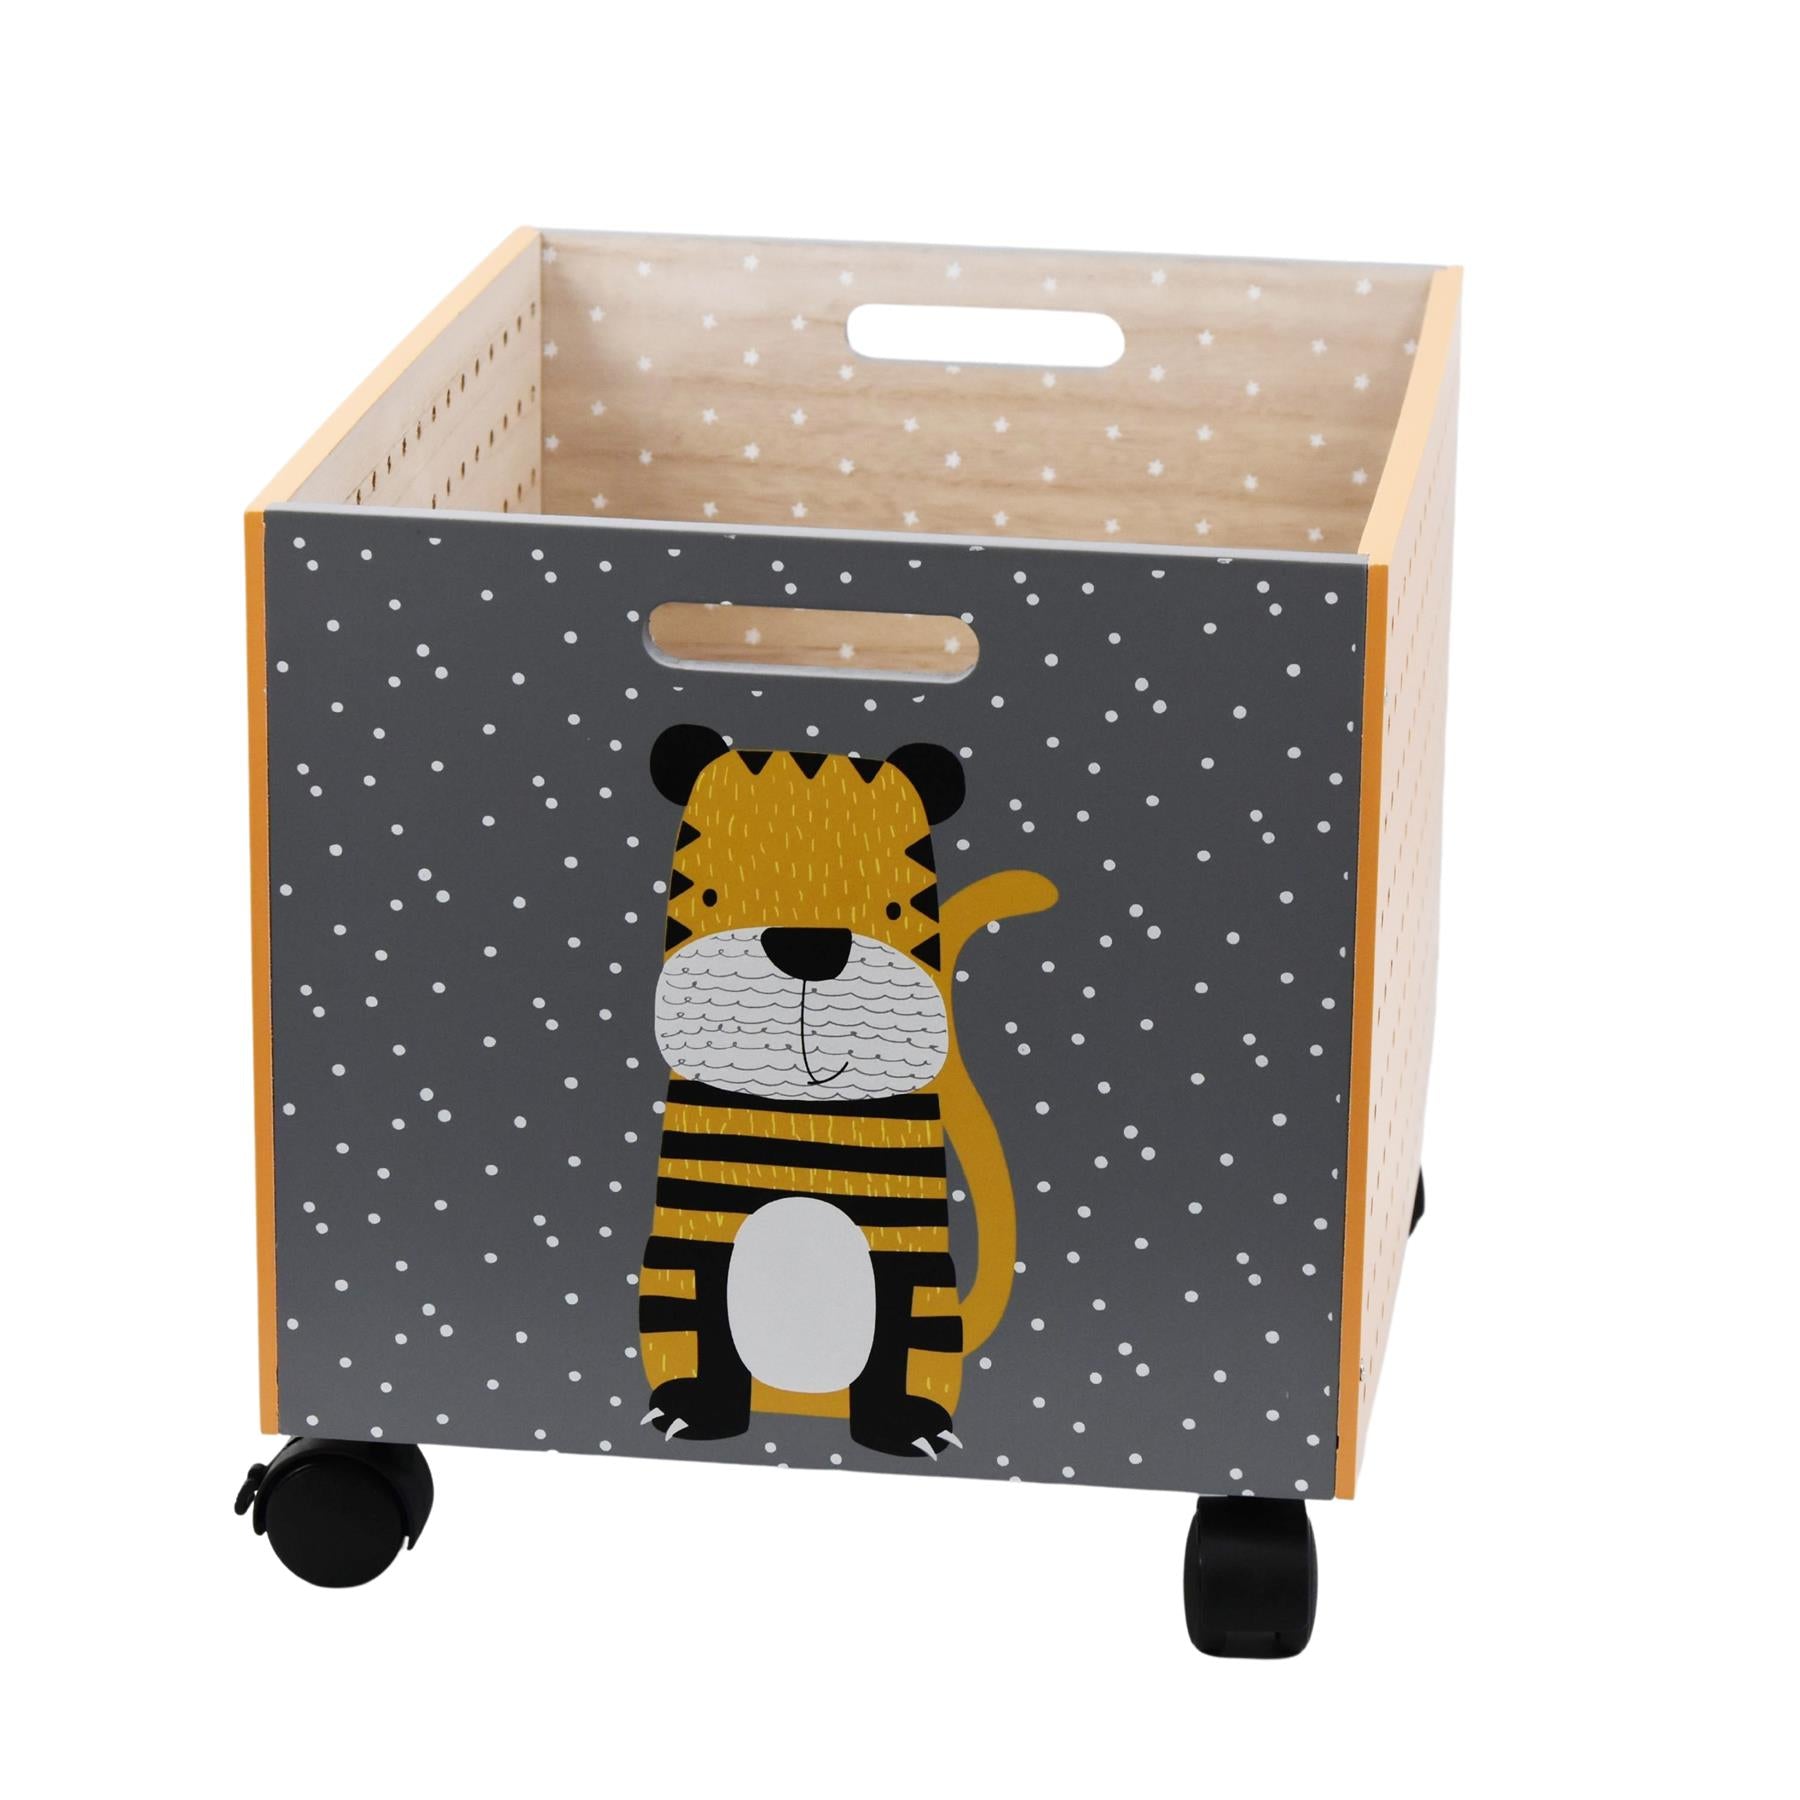 The Magic Toy Shop Kids Storage Box Tiger Design Kids Wooden Storage Chest On Wheels